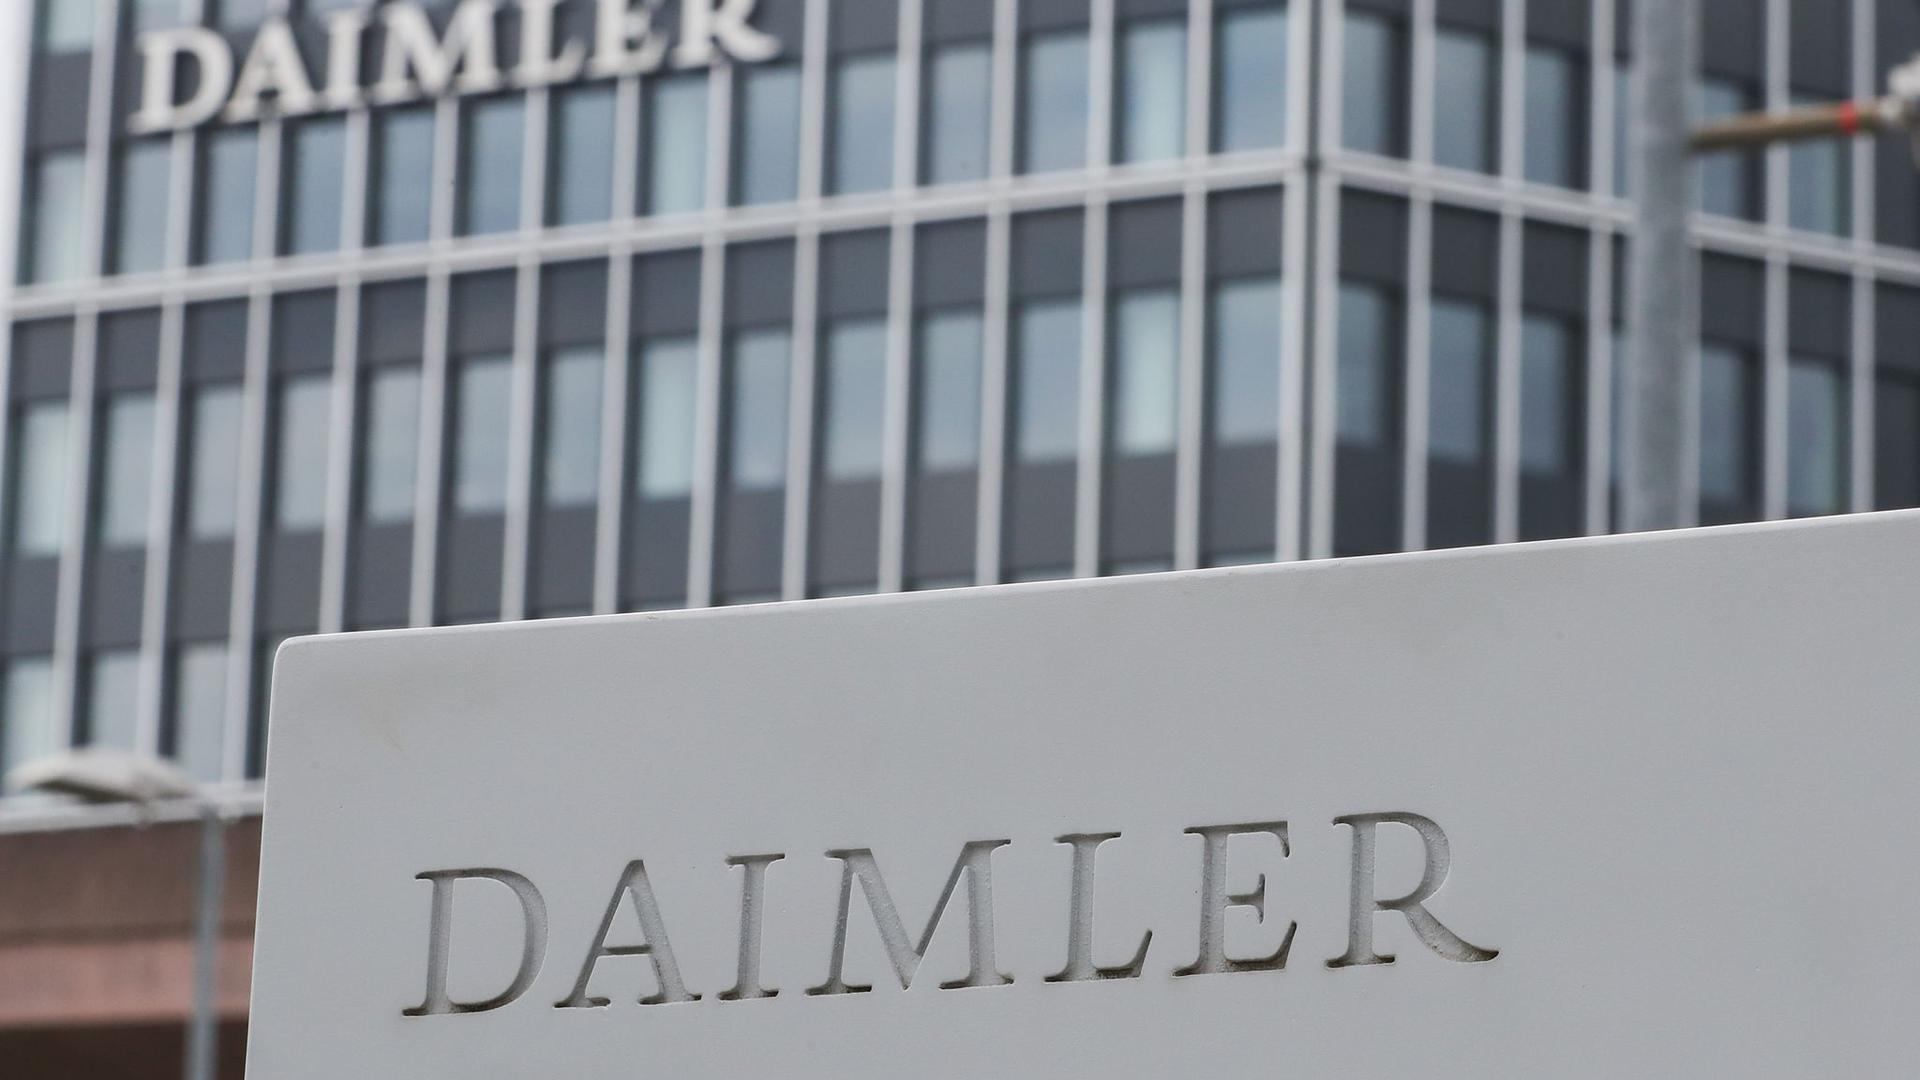 Ein Schild mit der Aufschrift Daimler steht vor dem Mercedes-Benz Werk in Untertürkheim.